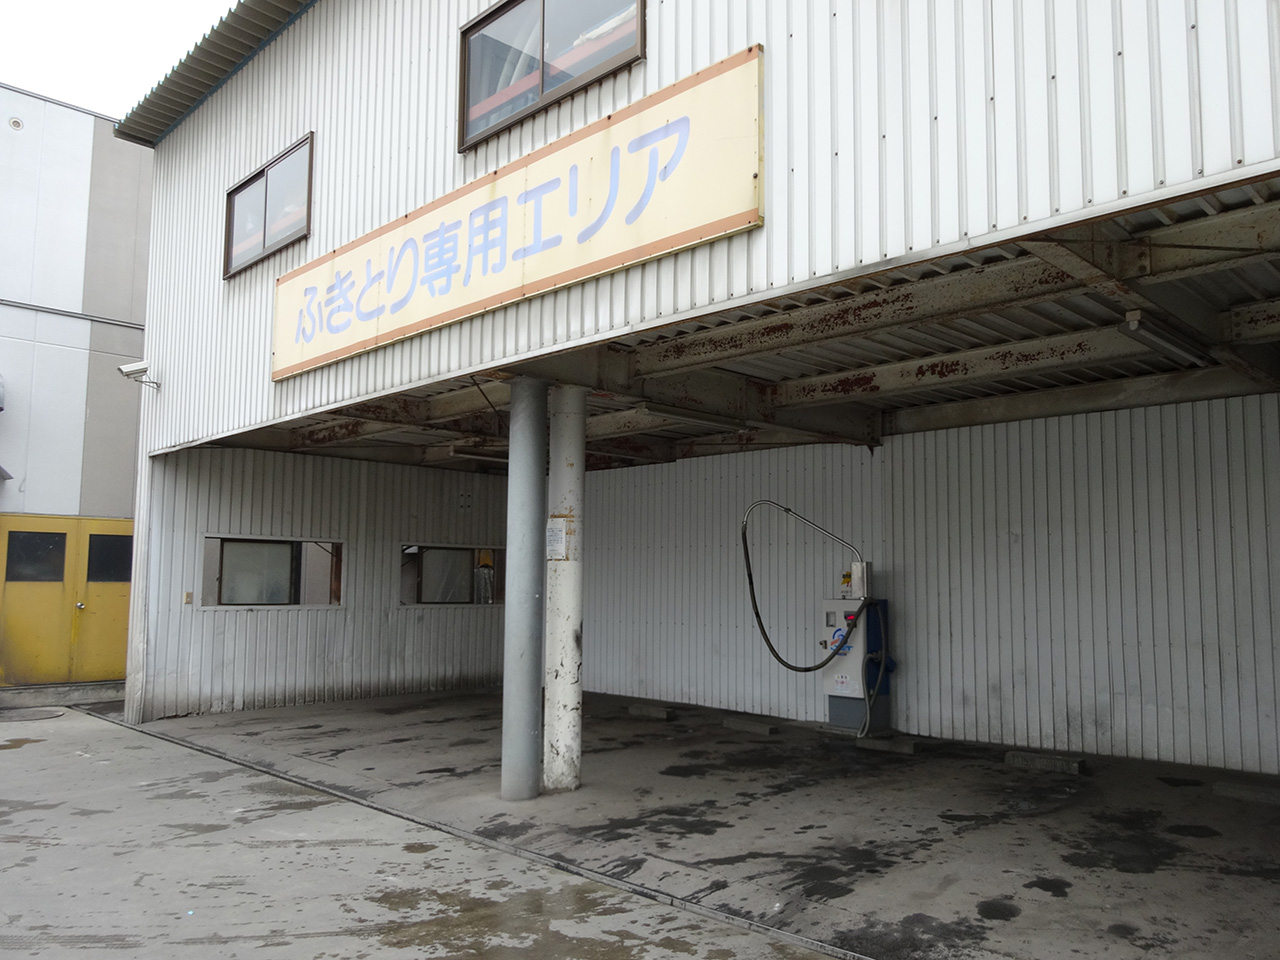 札幌の屋根付き 屋内 スペースがある洗車場まとめ 札幌洗車情報局